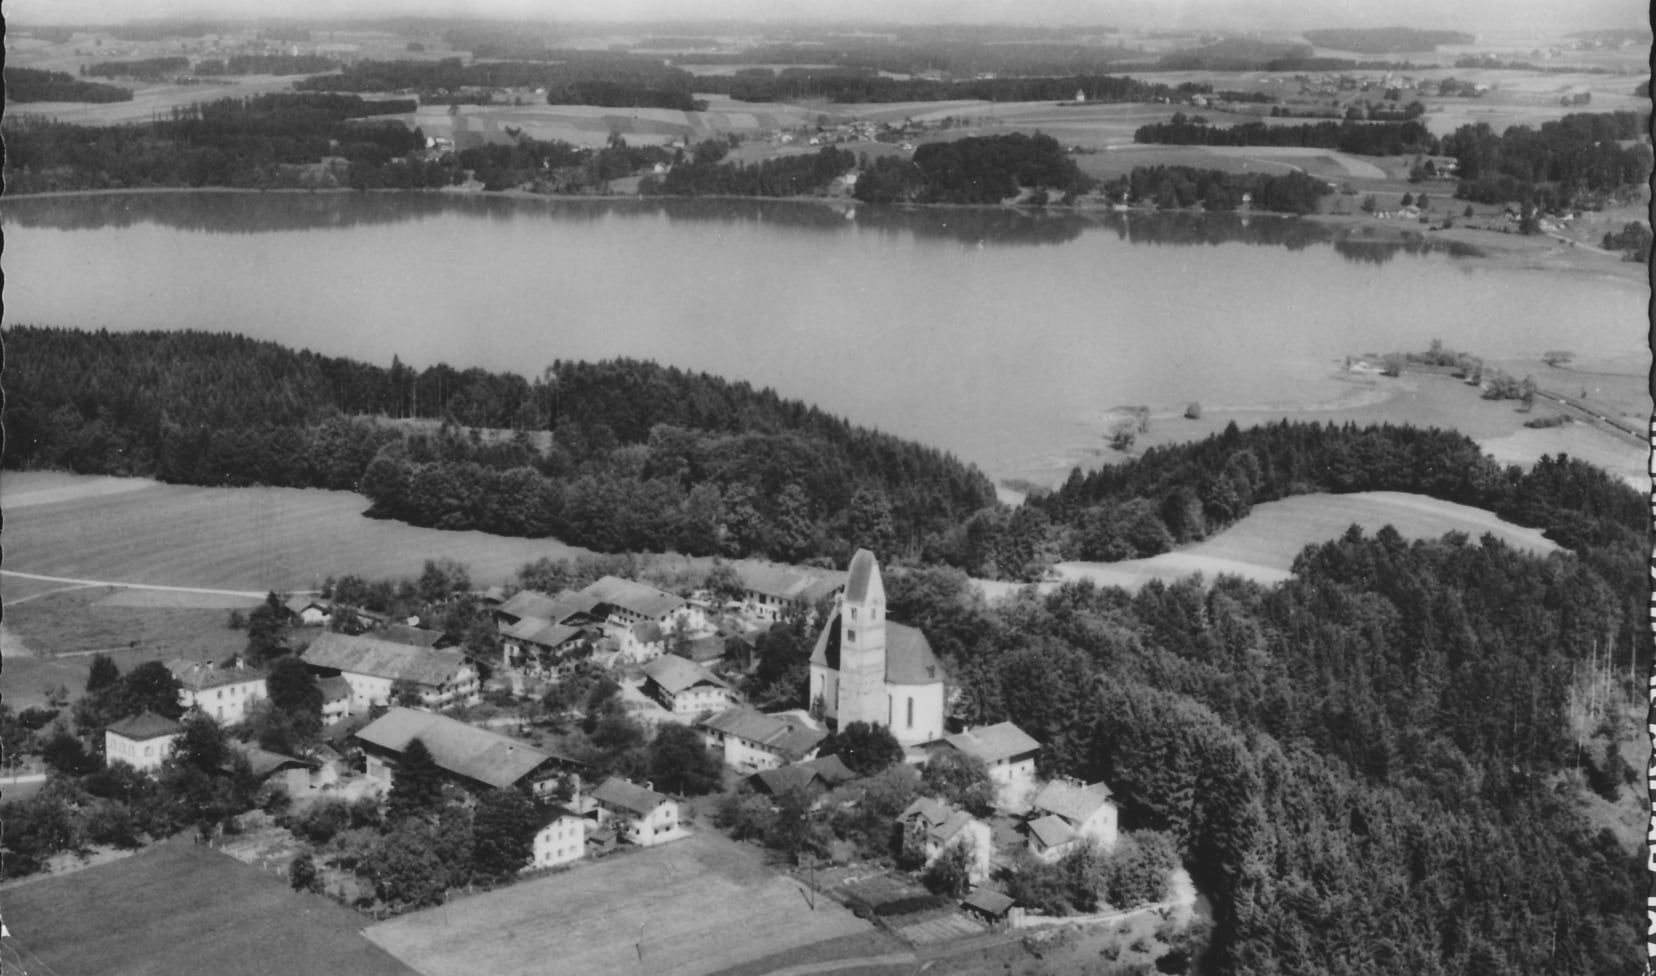 Schwarz-Weiss-Luftaufnahme des Orts Hirnsberg. Im Mittelpunkt der Kirchturm. Hinter dem Ort Bäume und dann der See